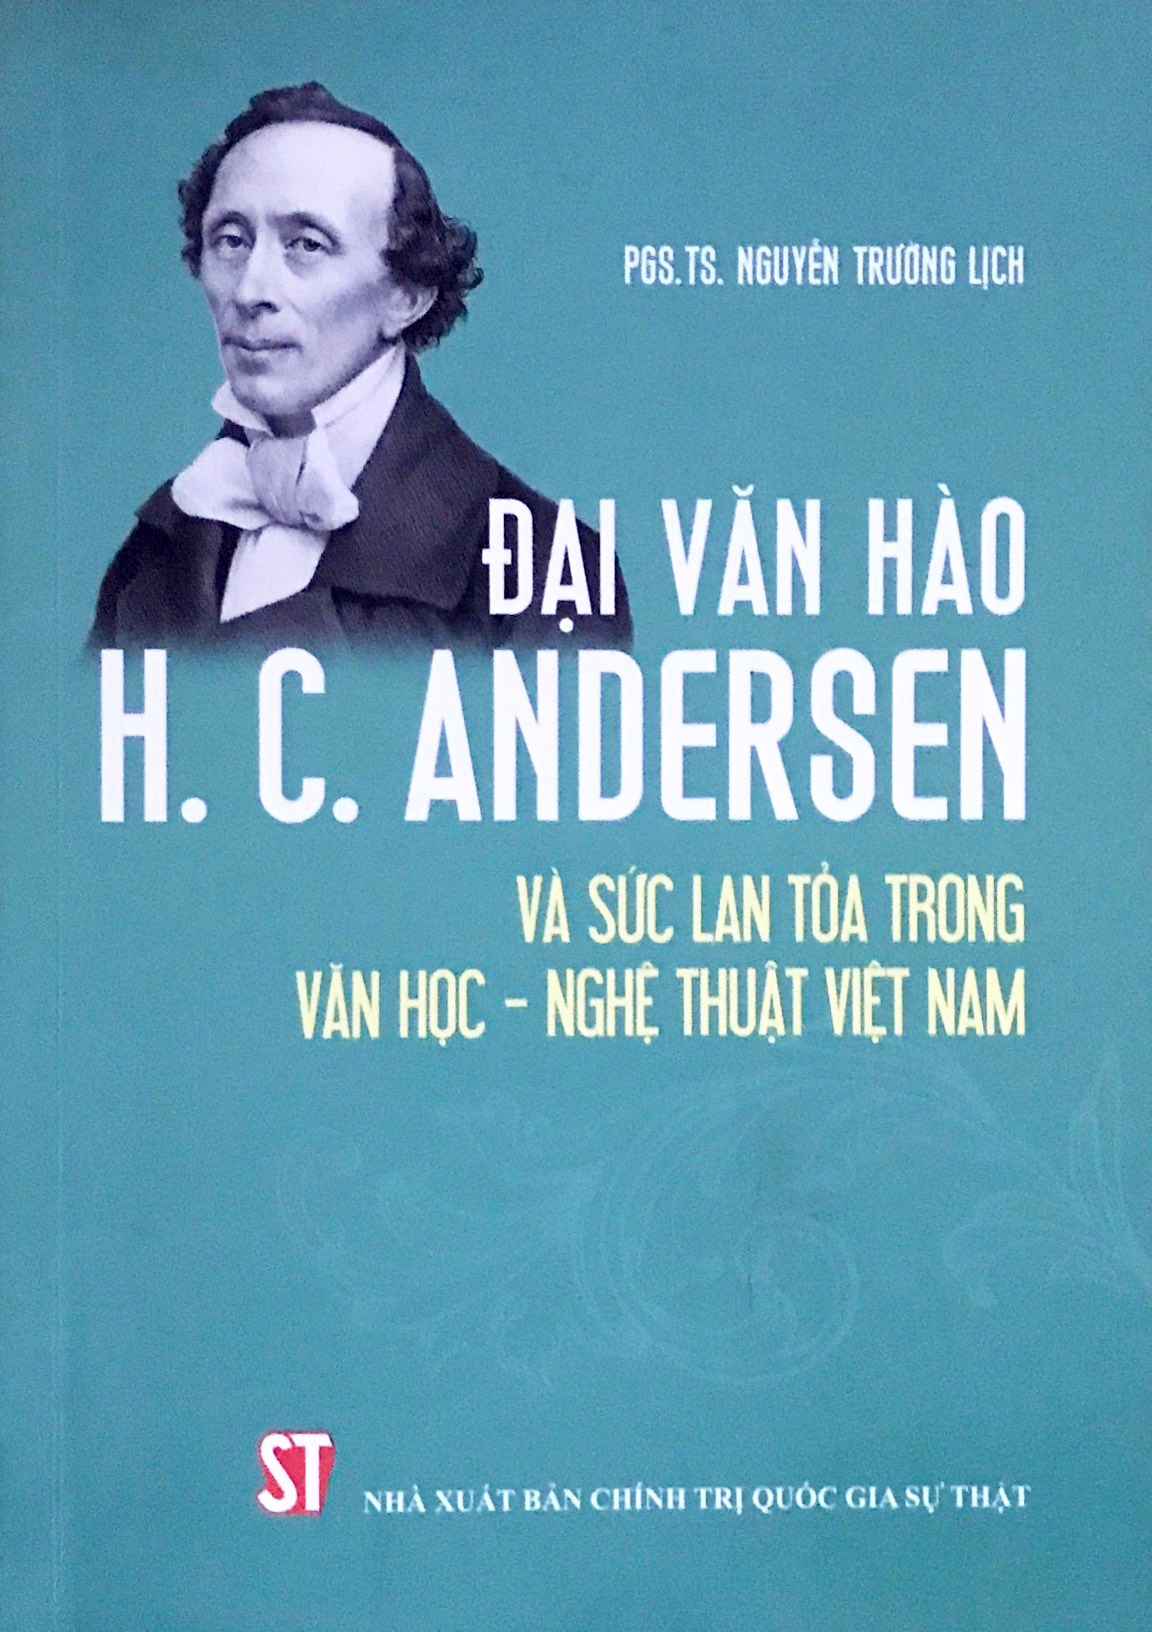 Đại văn hào H.C. Andersen và sức lan tỏa trong văn học - nghệ thuật Việt Nam